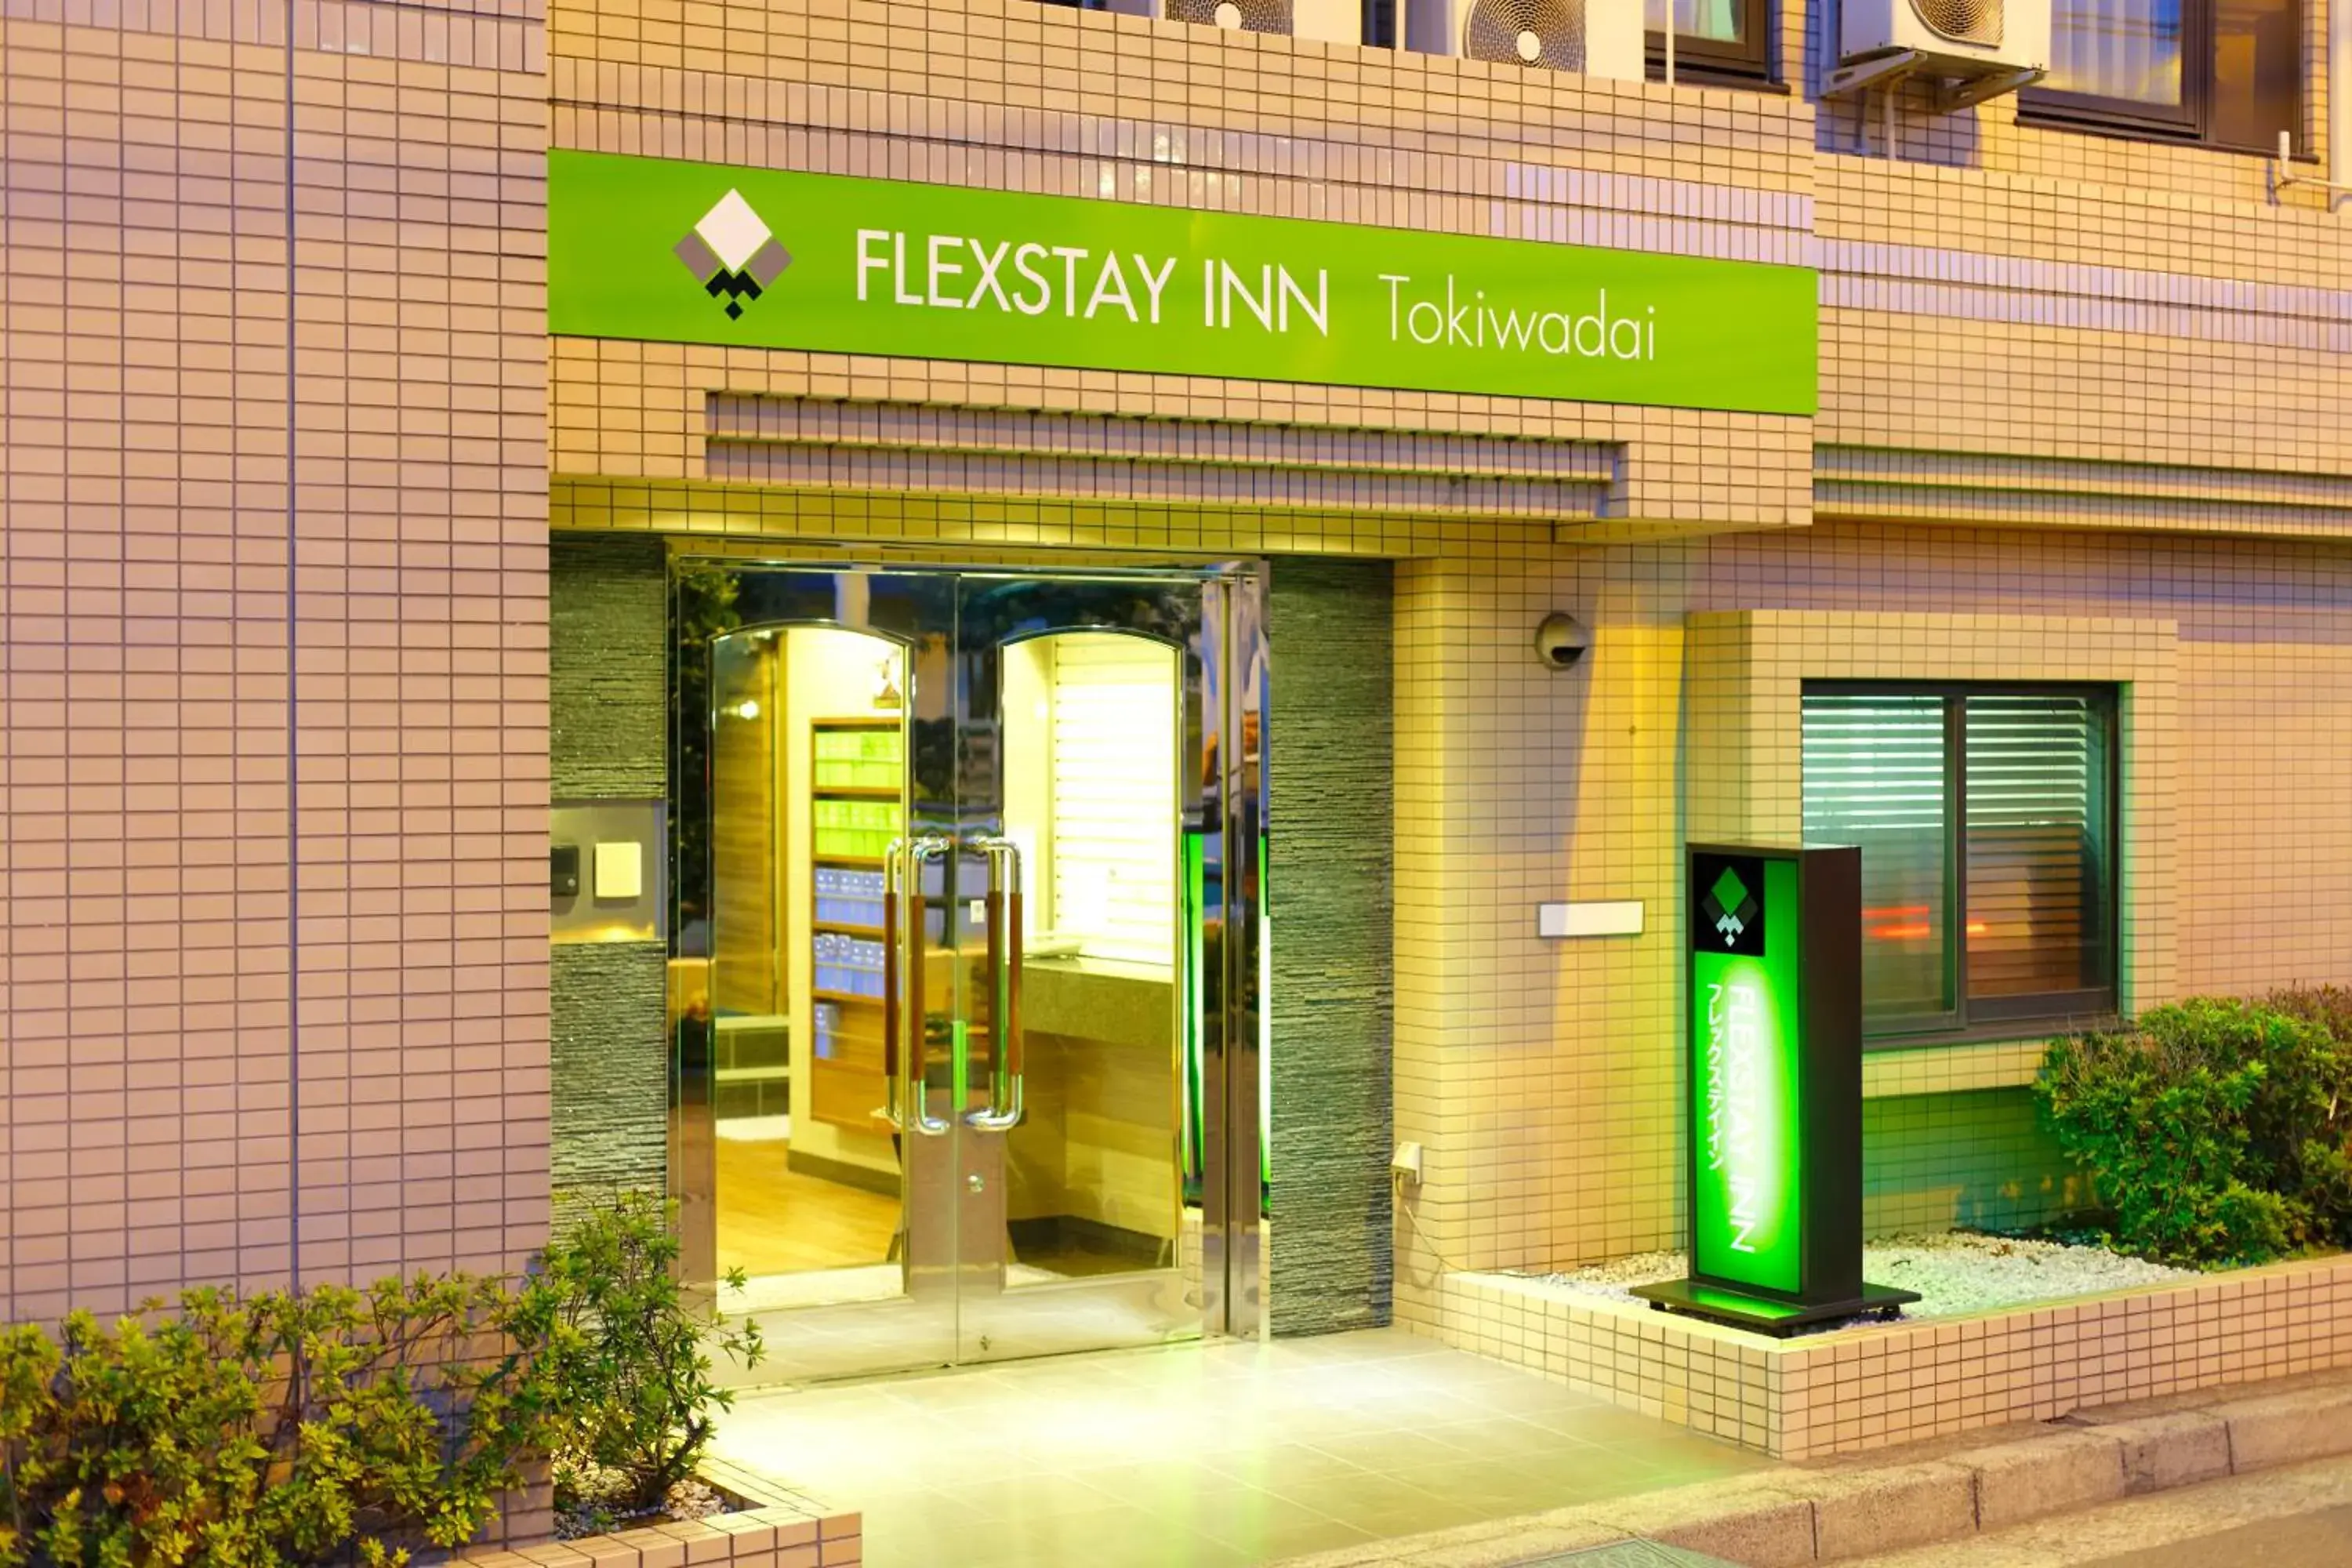 Facade/entrance in Flexstay Inn Tokiwadai